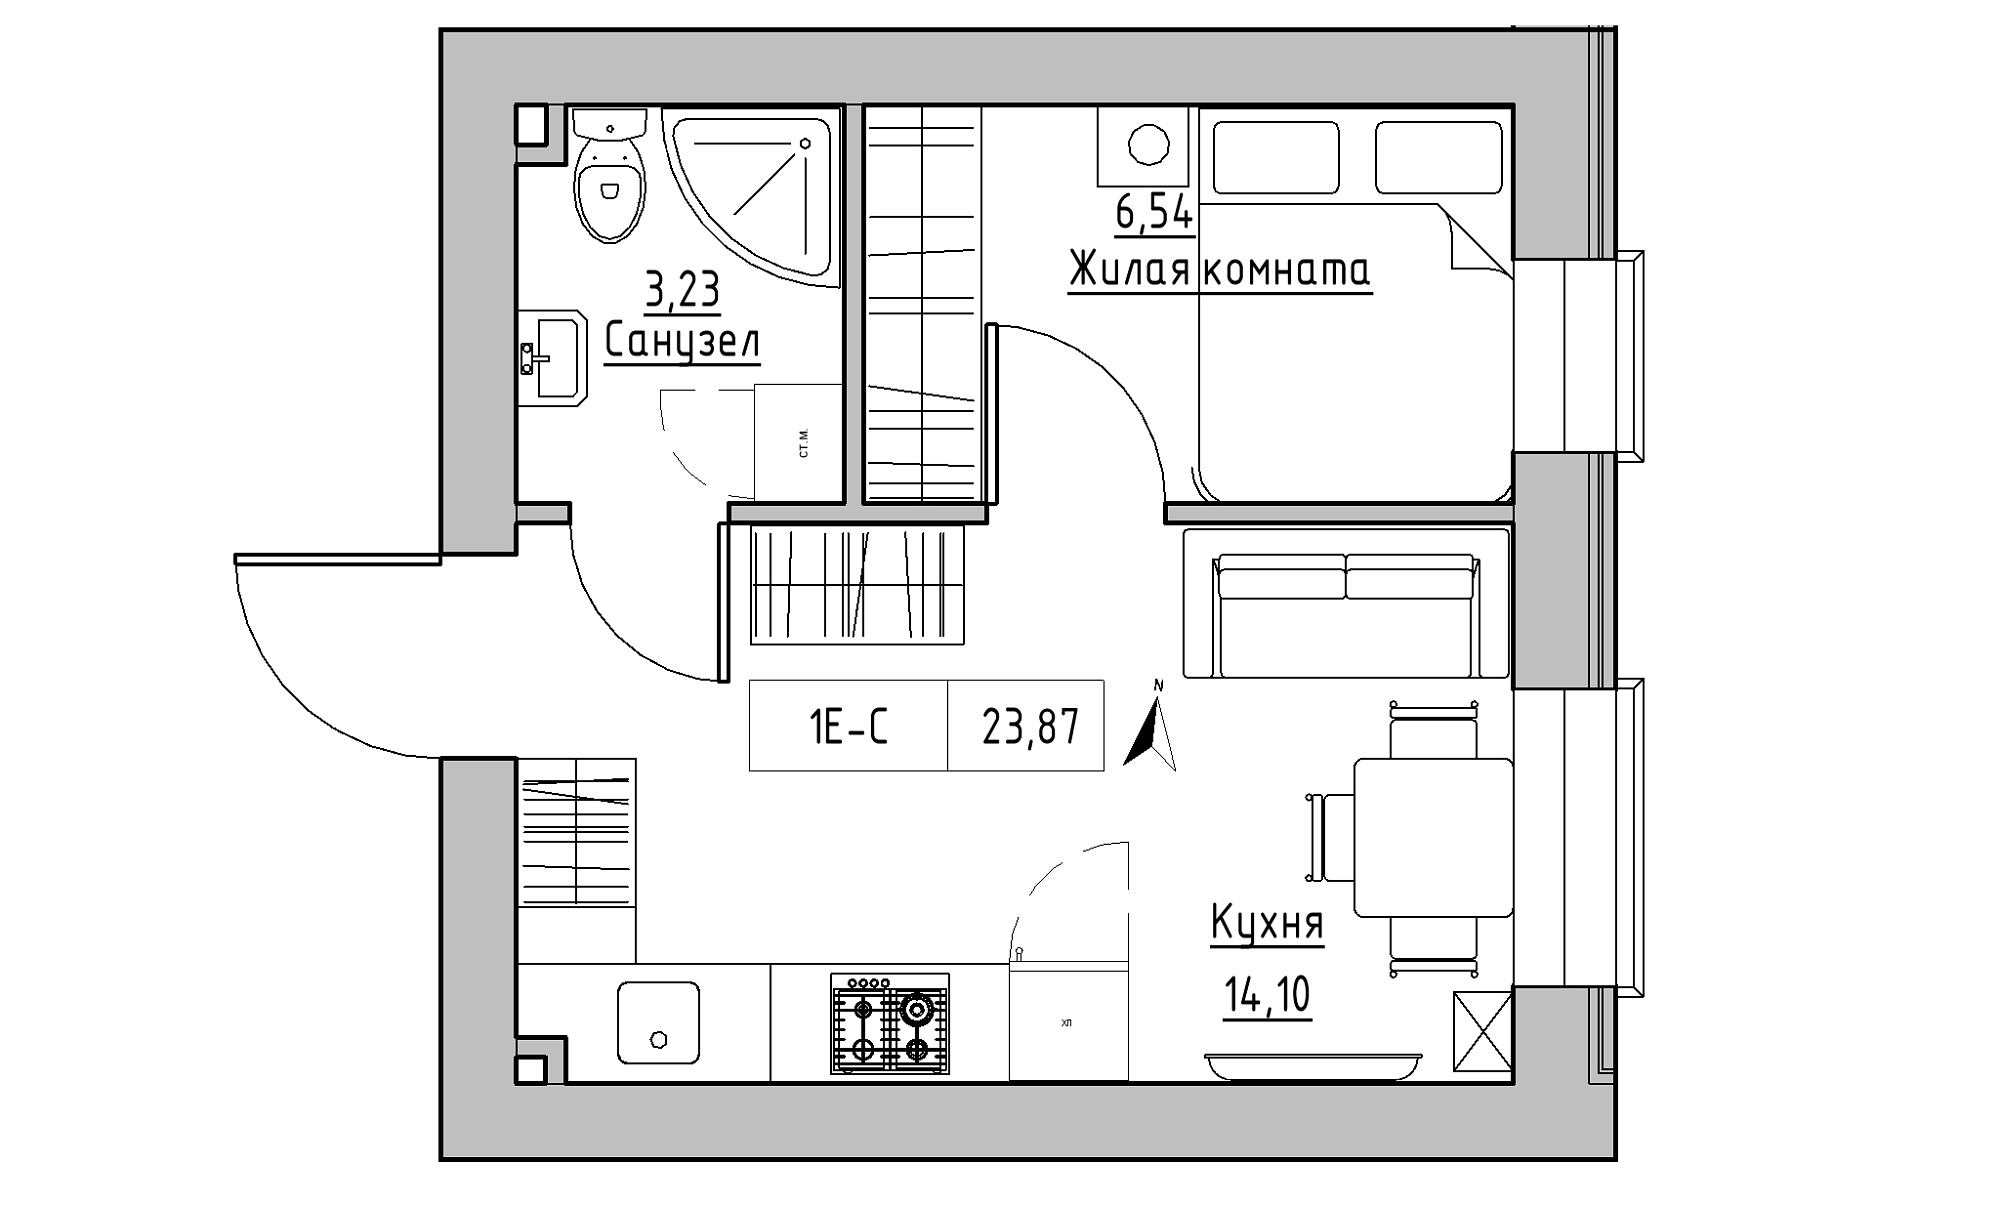 Планування 1-к квартира площею 23.87м2, KS-023-05/0004.